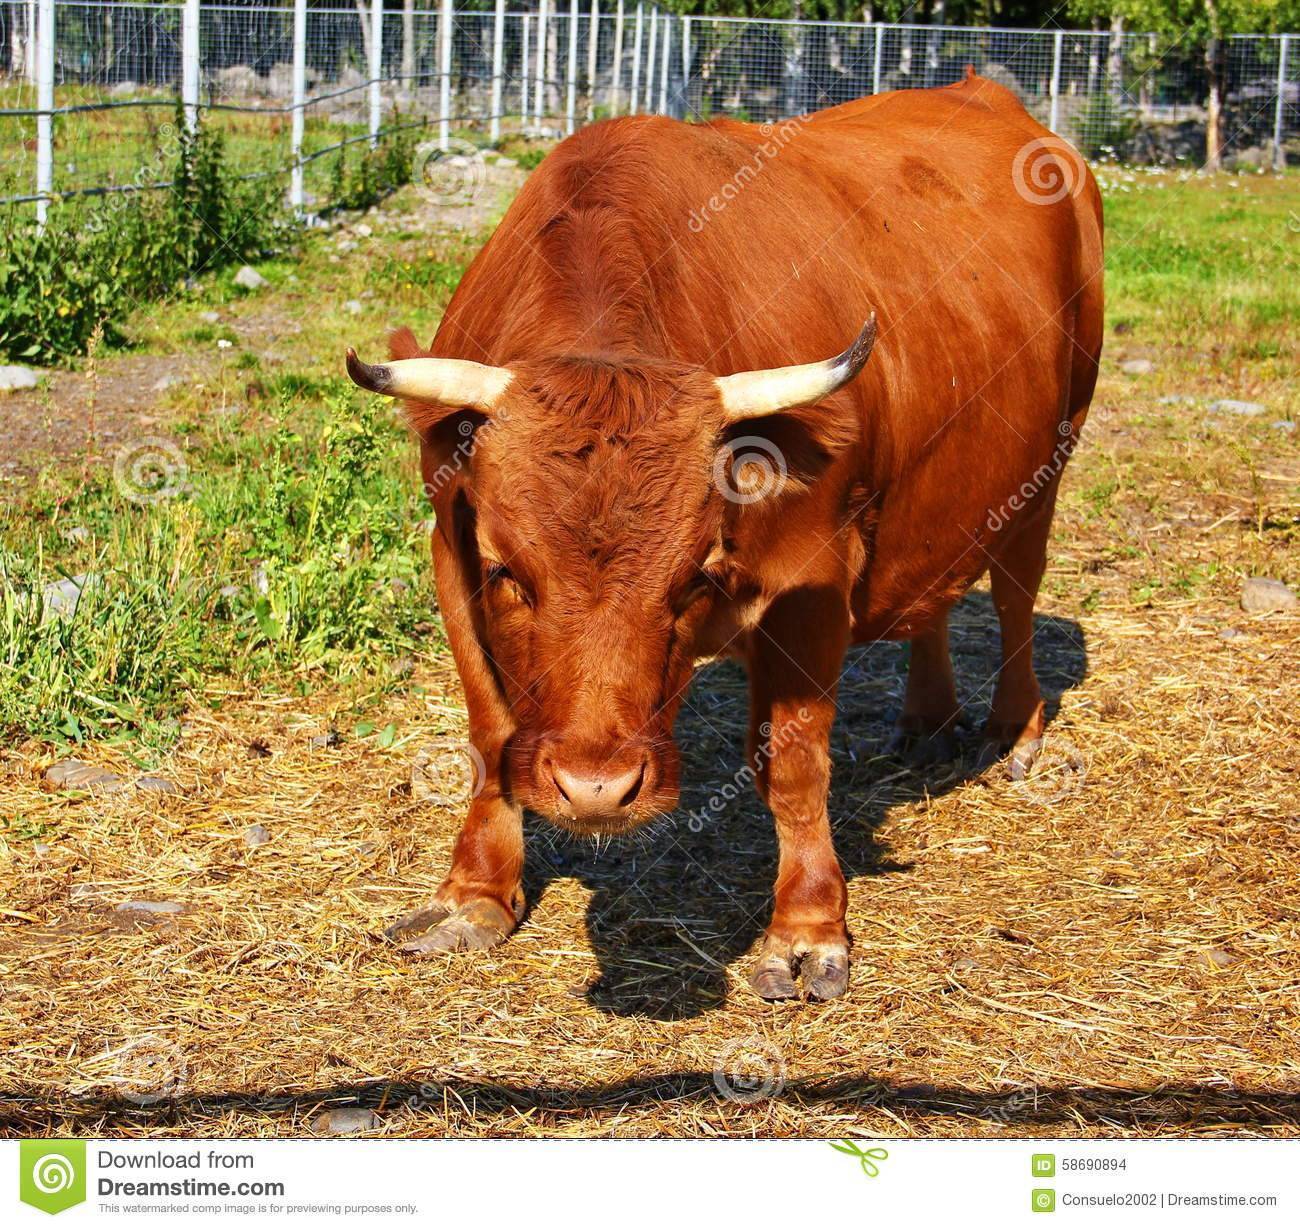 О мини коровах (породы маленьких, карликовых, декоративных, миниатюрных коров)